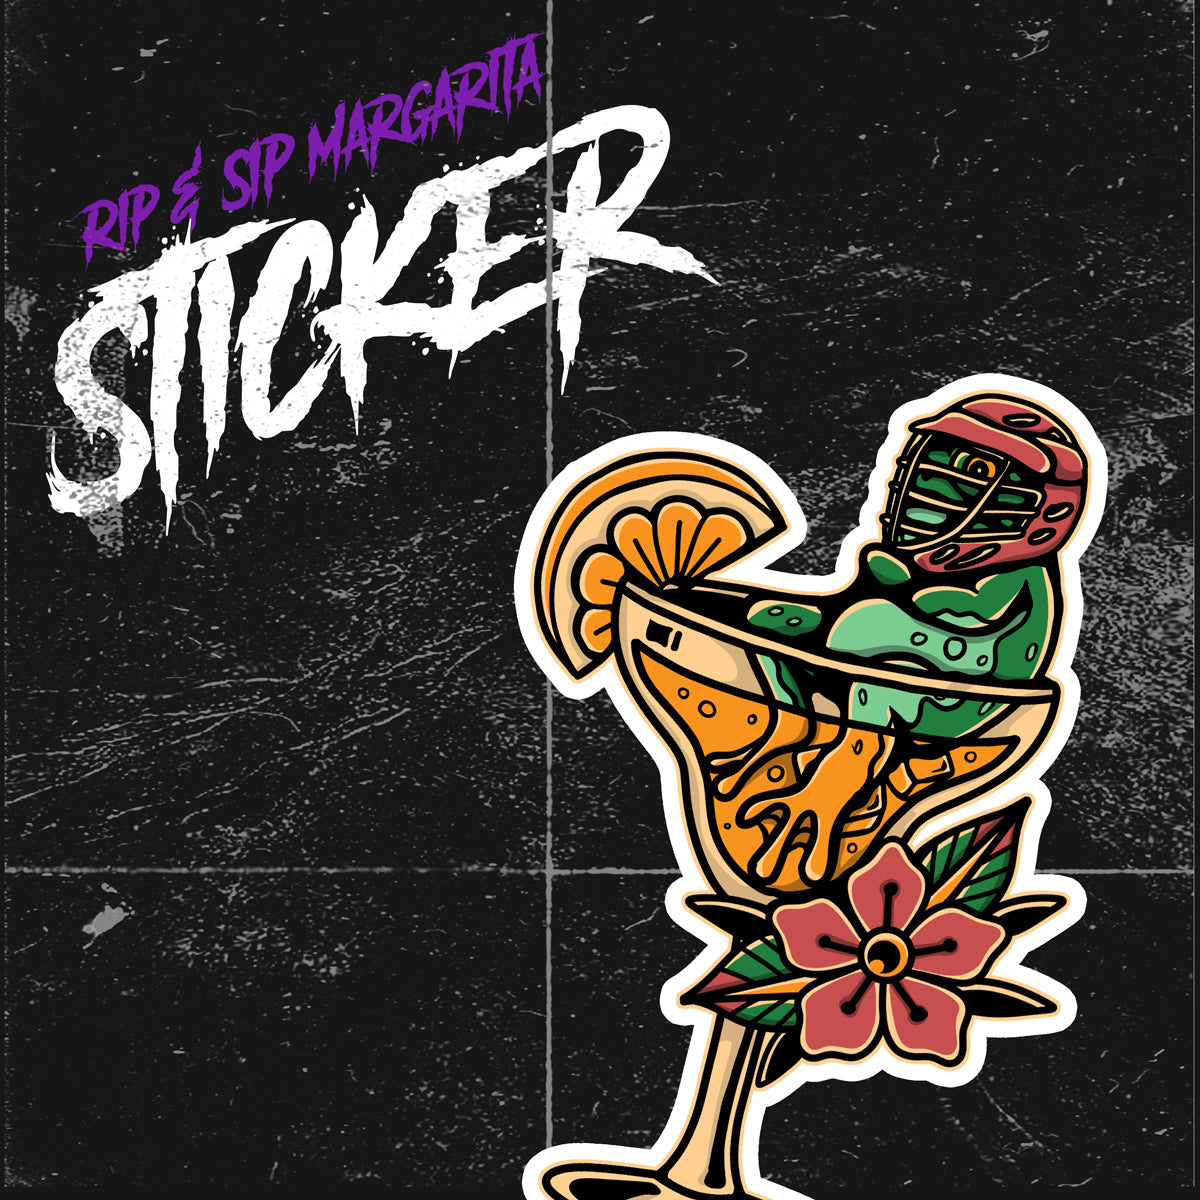 Rip & Sip Margarita - Vinyl Sticker